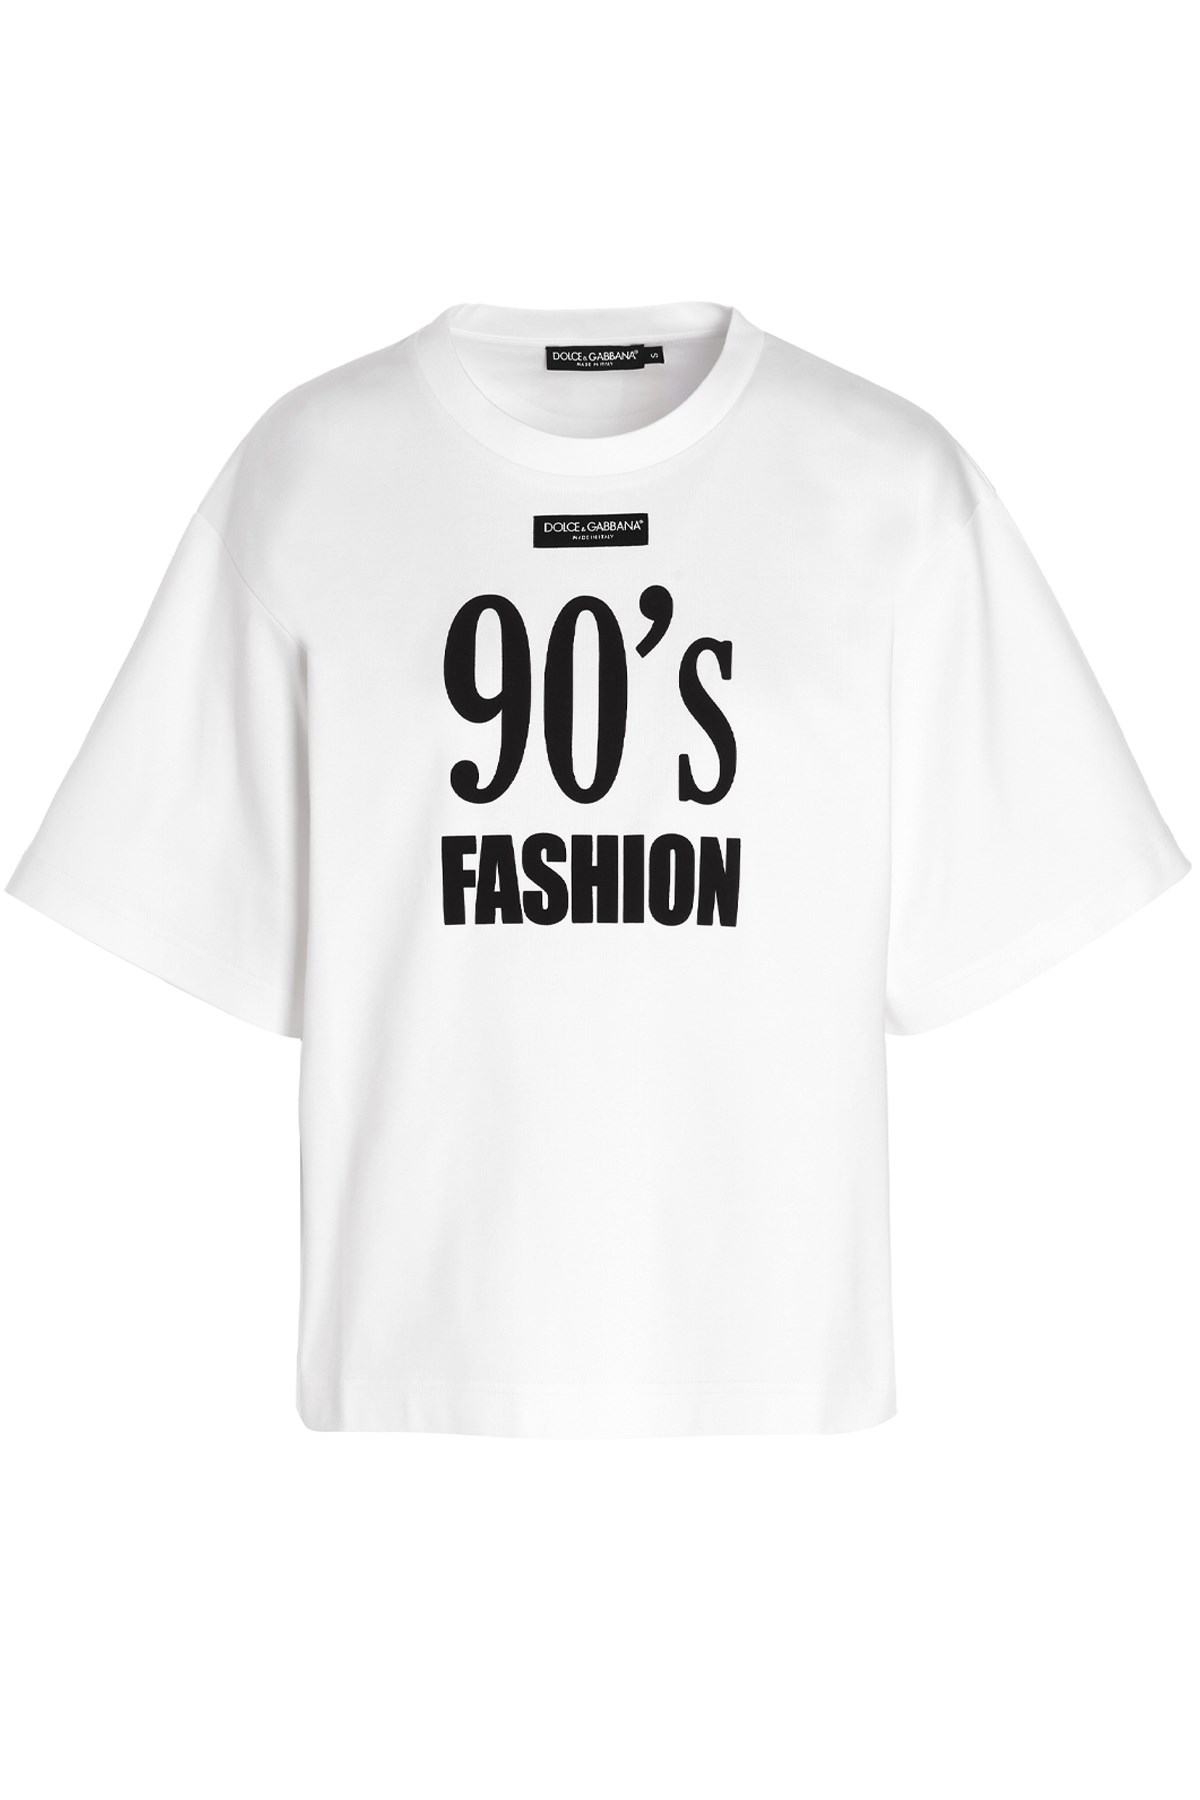 DOLCE & GABBANA '90S Fashion' Printed T-Shirt